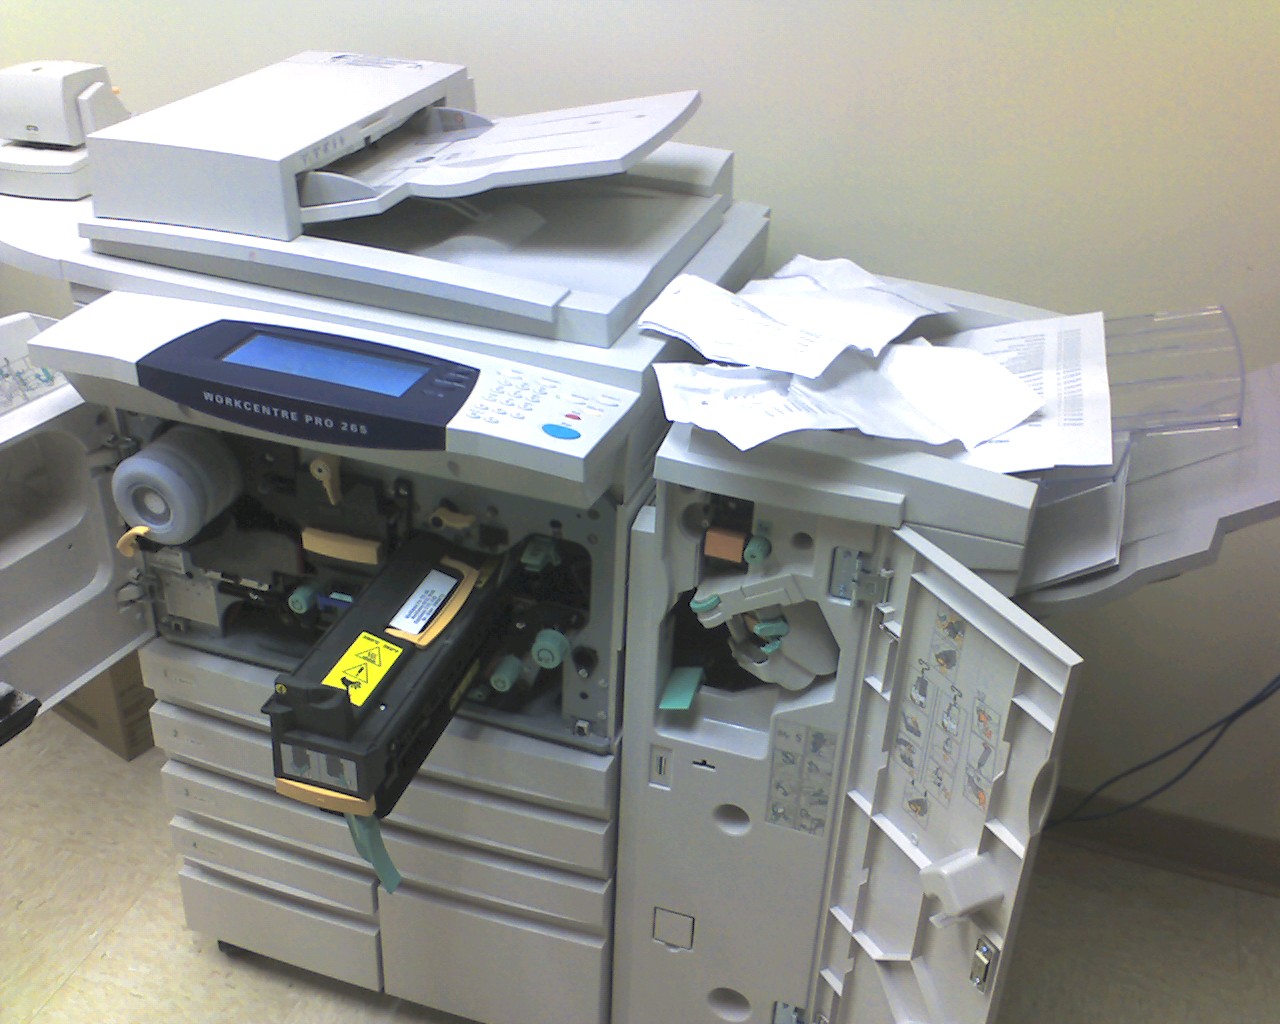 Copy Machine Broken Copier Printer Jam